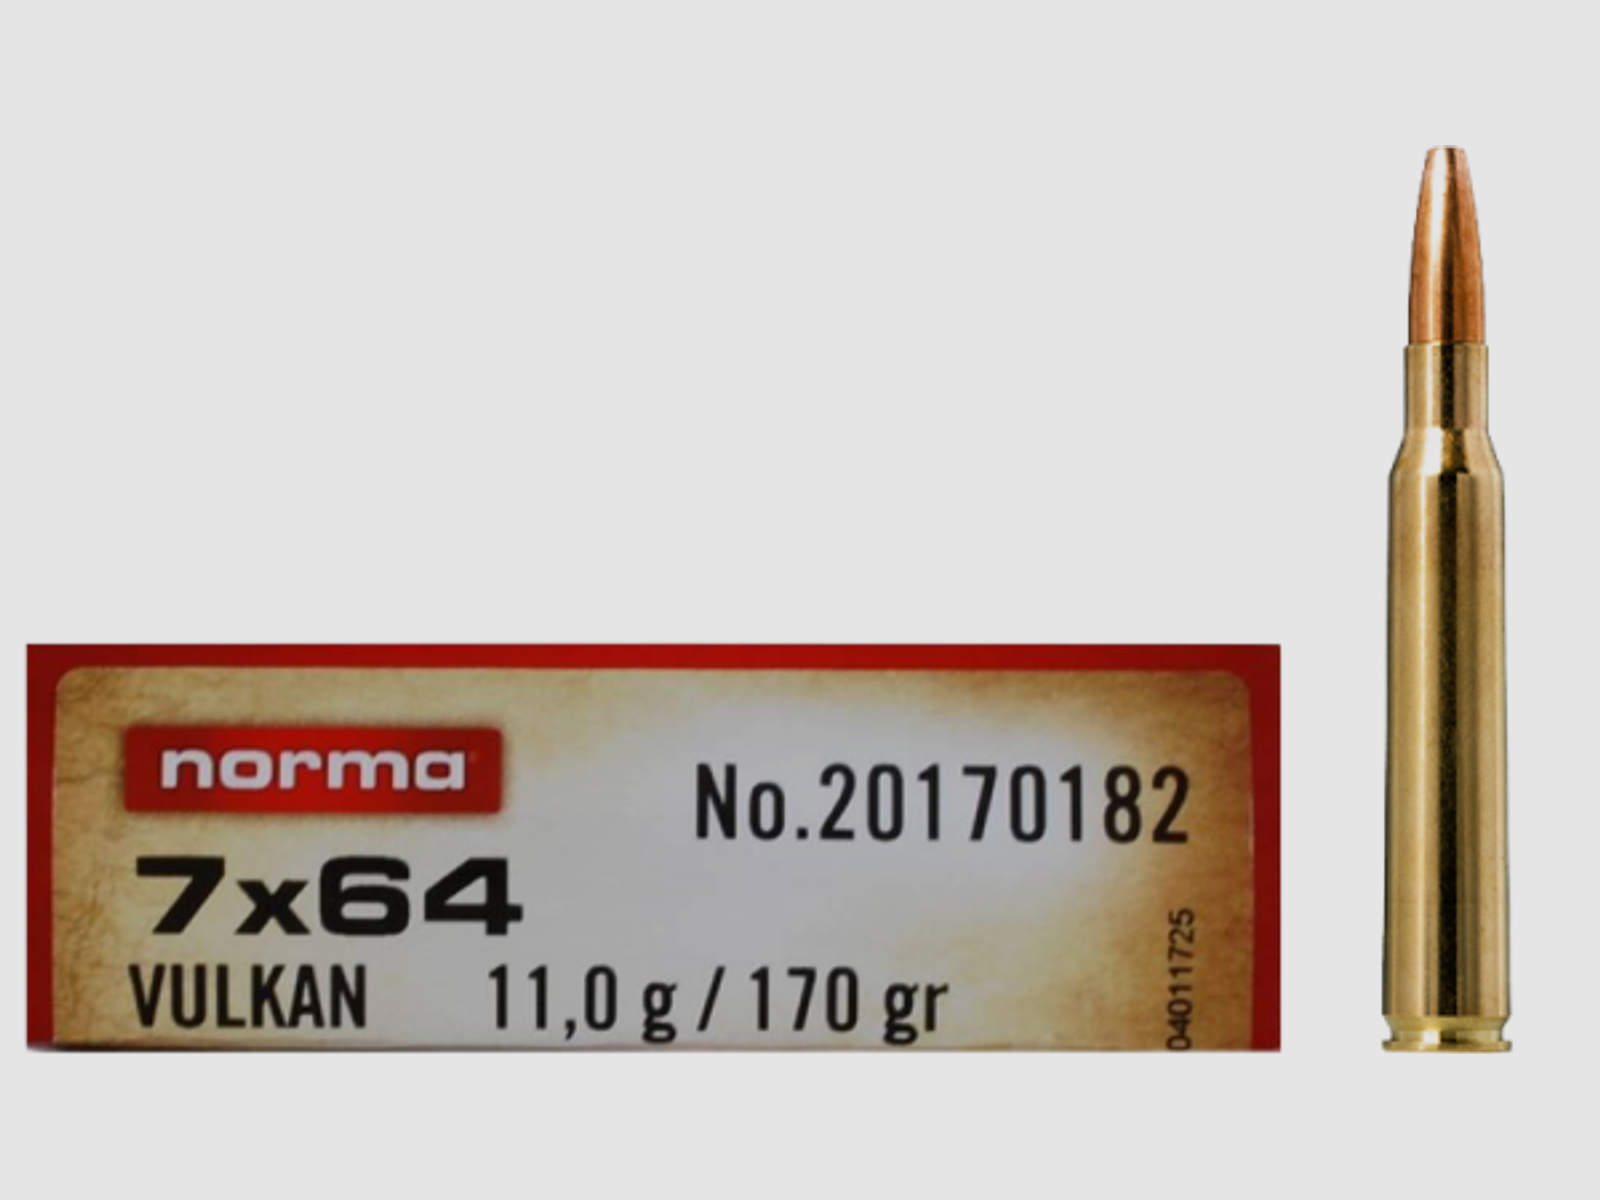 Norma Vulkan 7x64 170 grs Büchsenpatronen